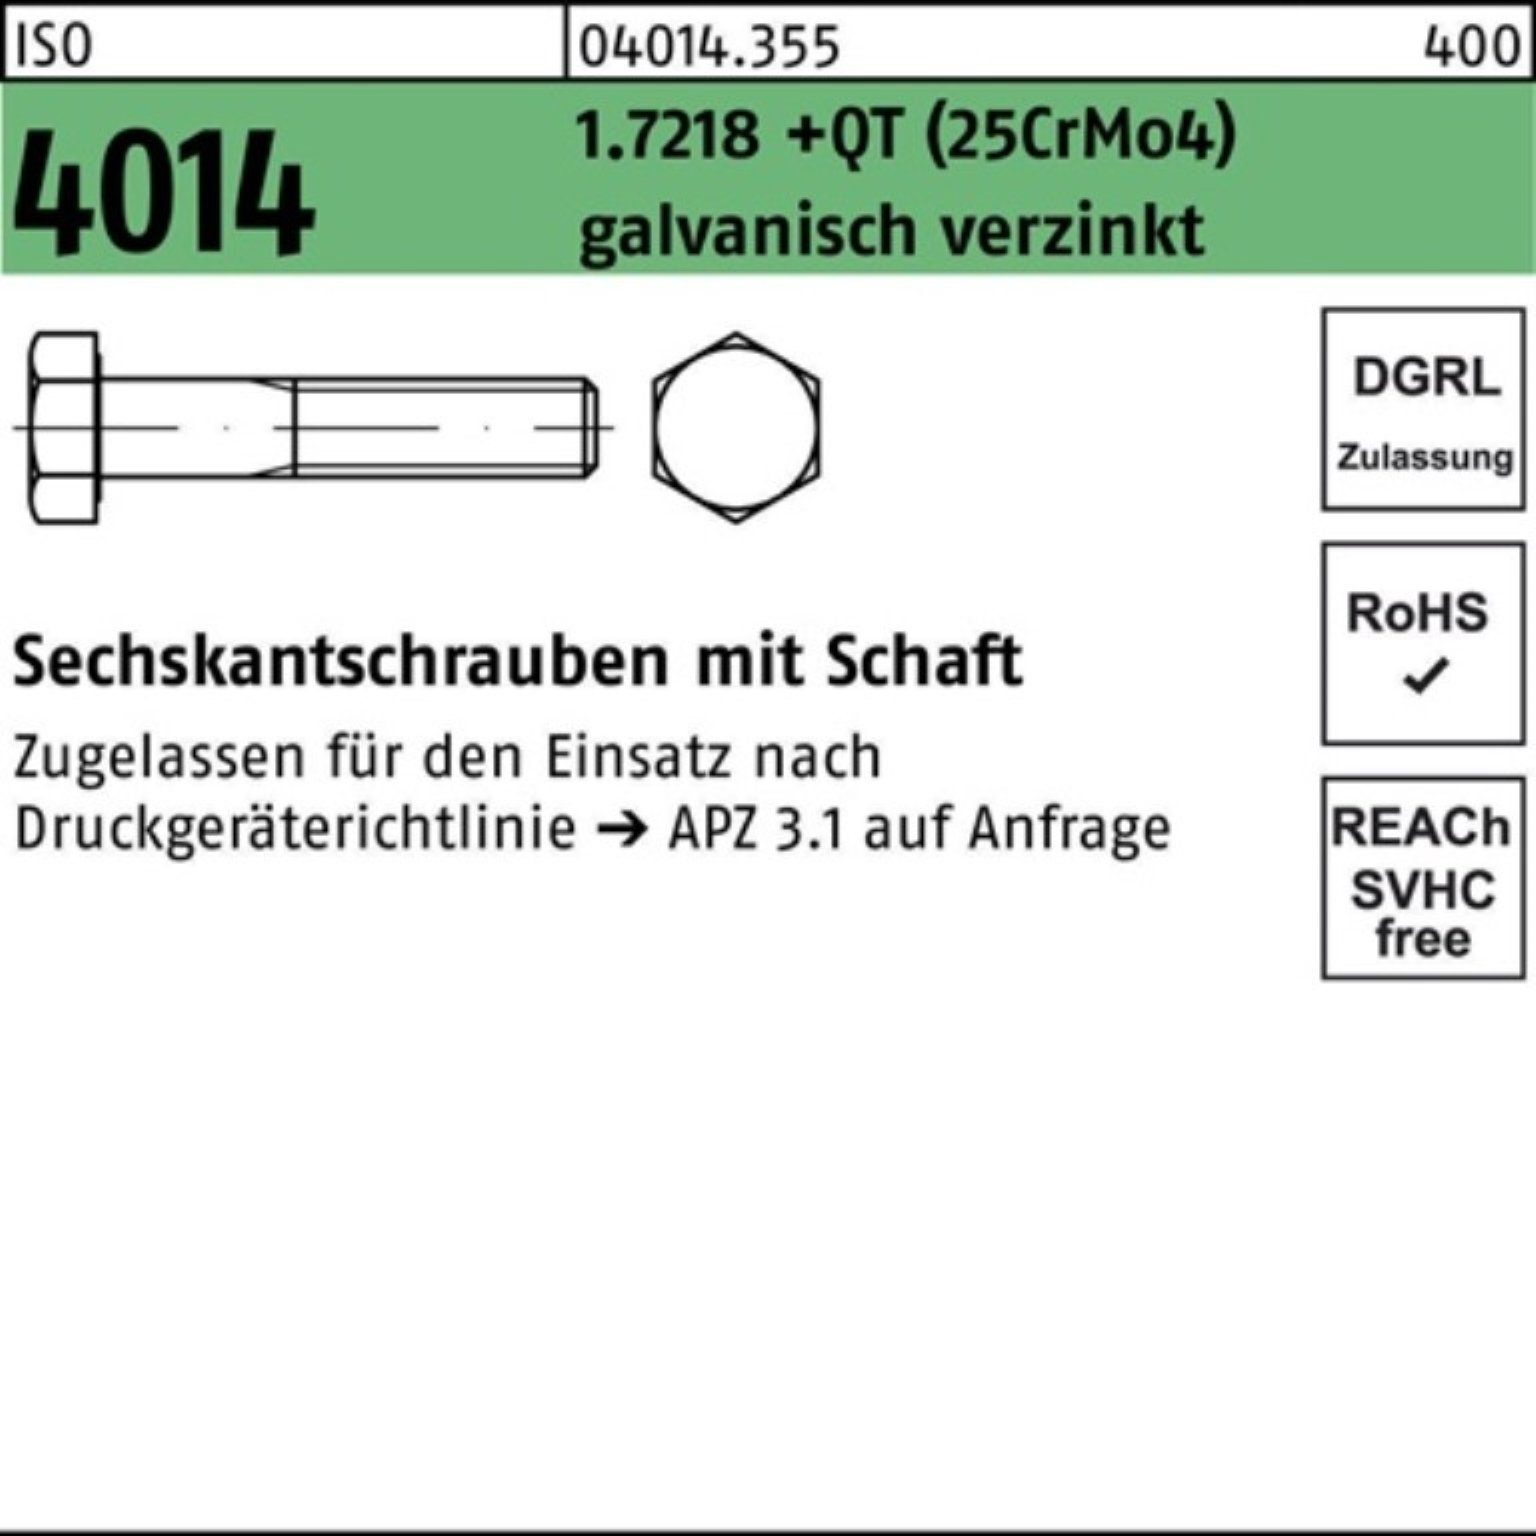 Bufab Sechskantschraube 100er 4014 Pack 1.7218 M36x140 ISO (25CrM Schaft Sechskantschraube +QT